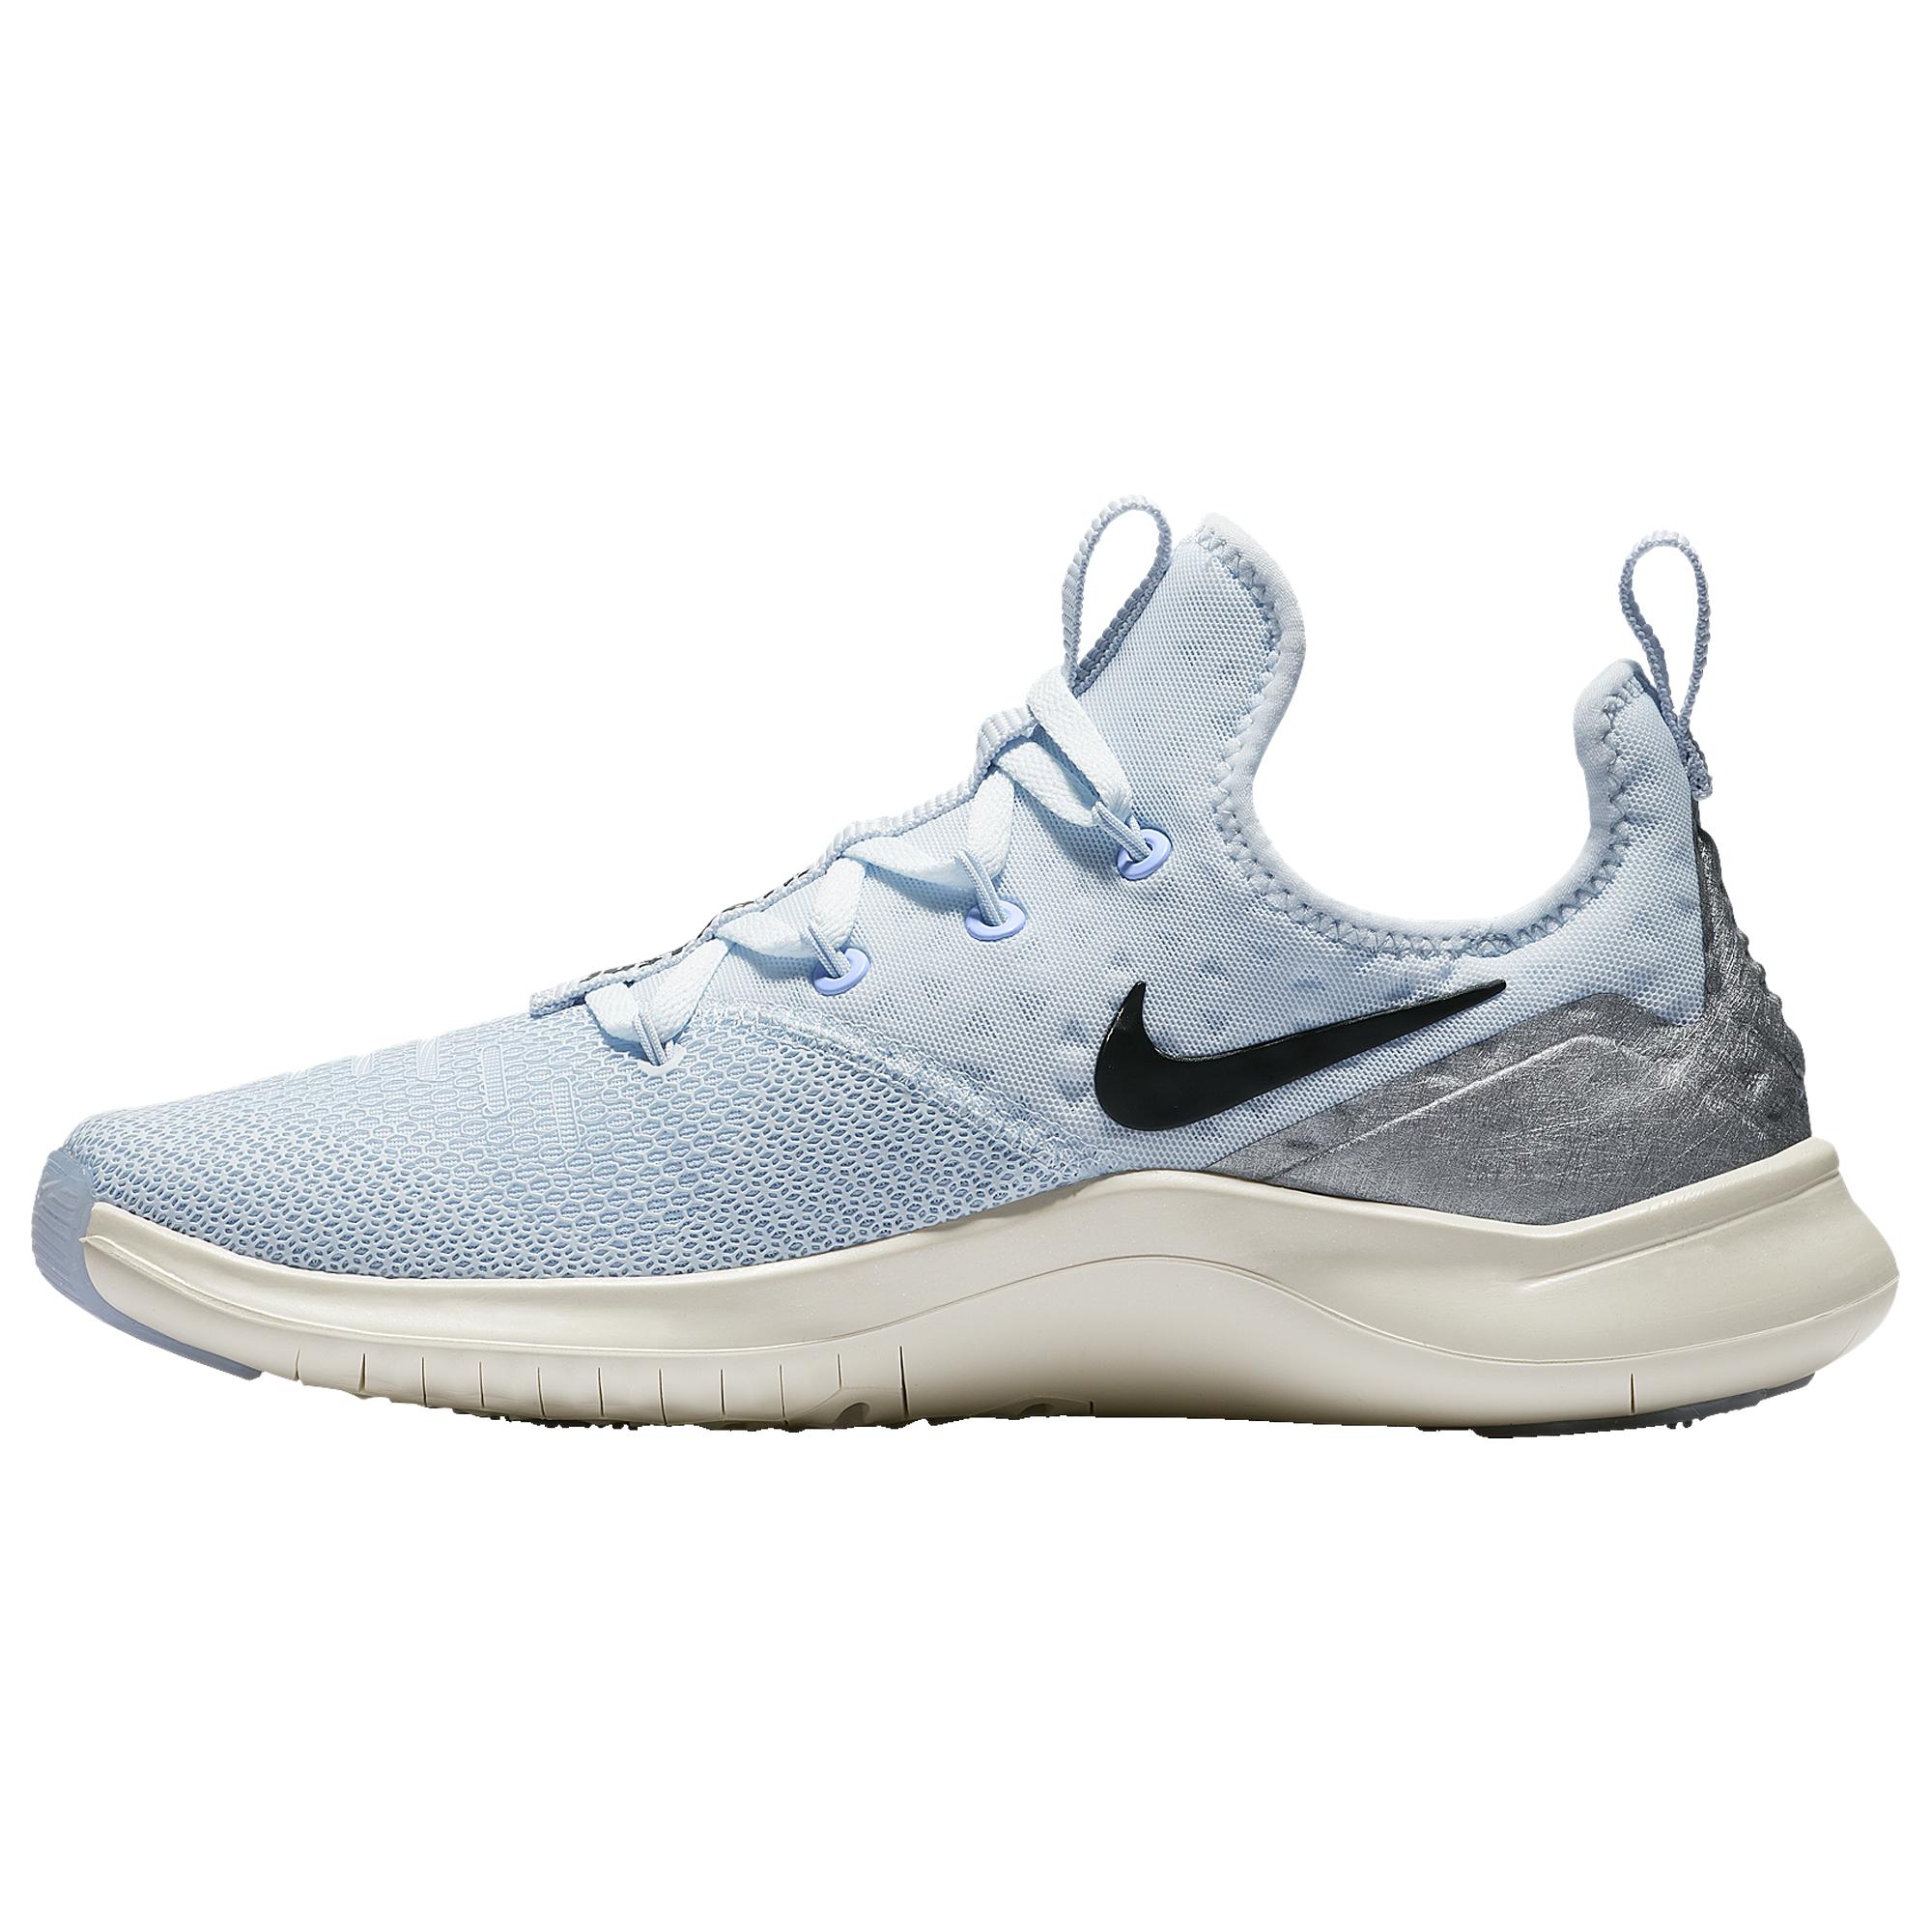 Nike Free Tr 8 Training Shoes in Blue/Black/Silver (Blue) | Lyst اسواق ينبع